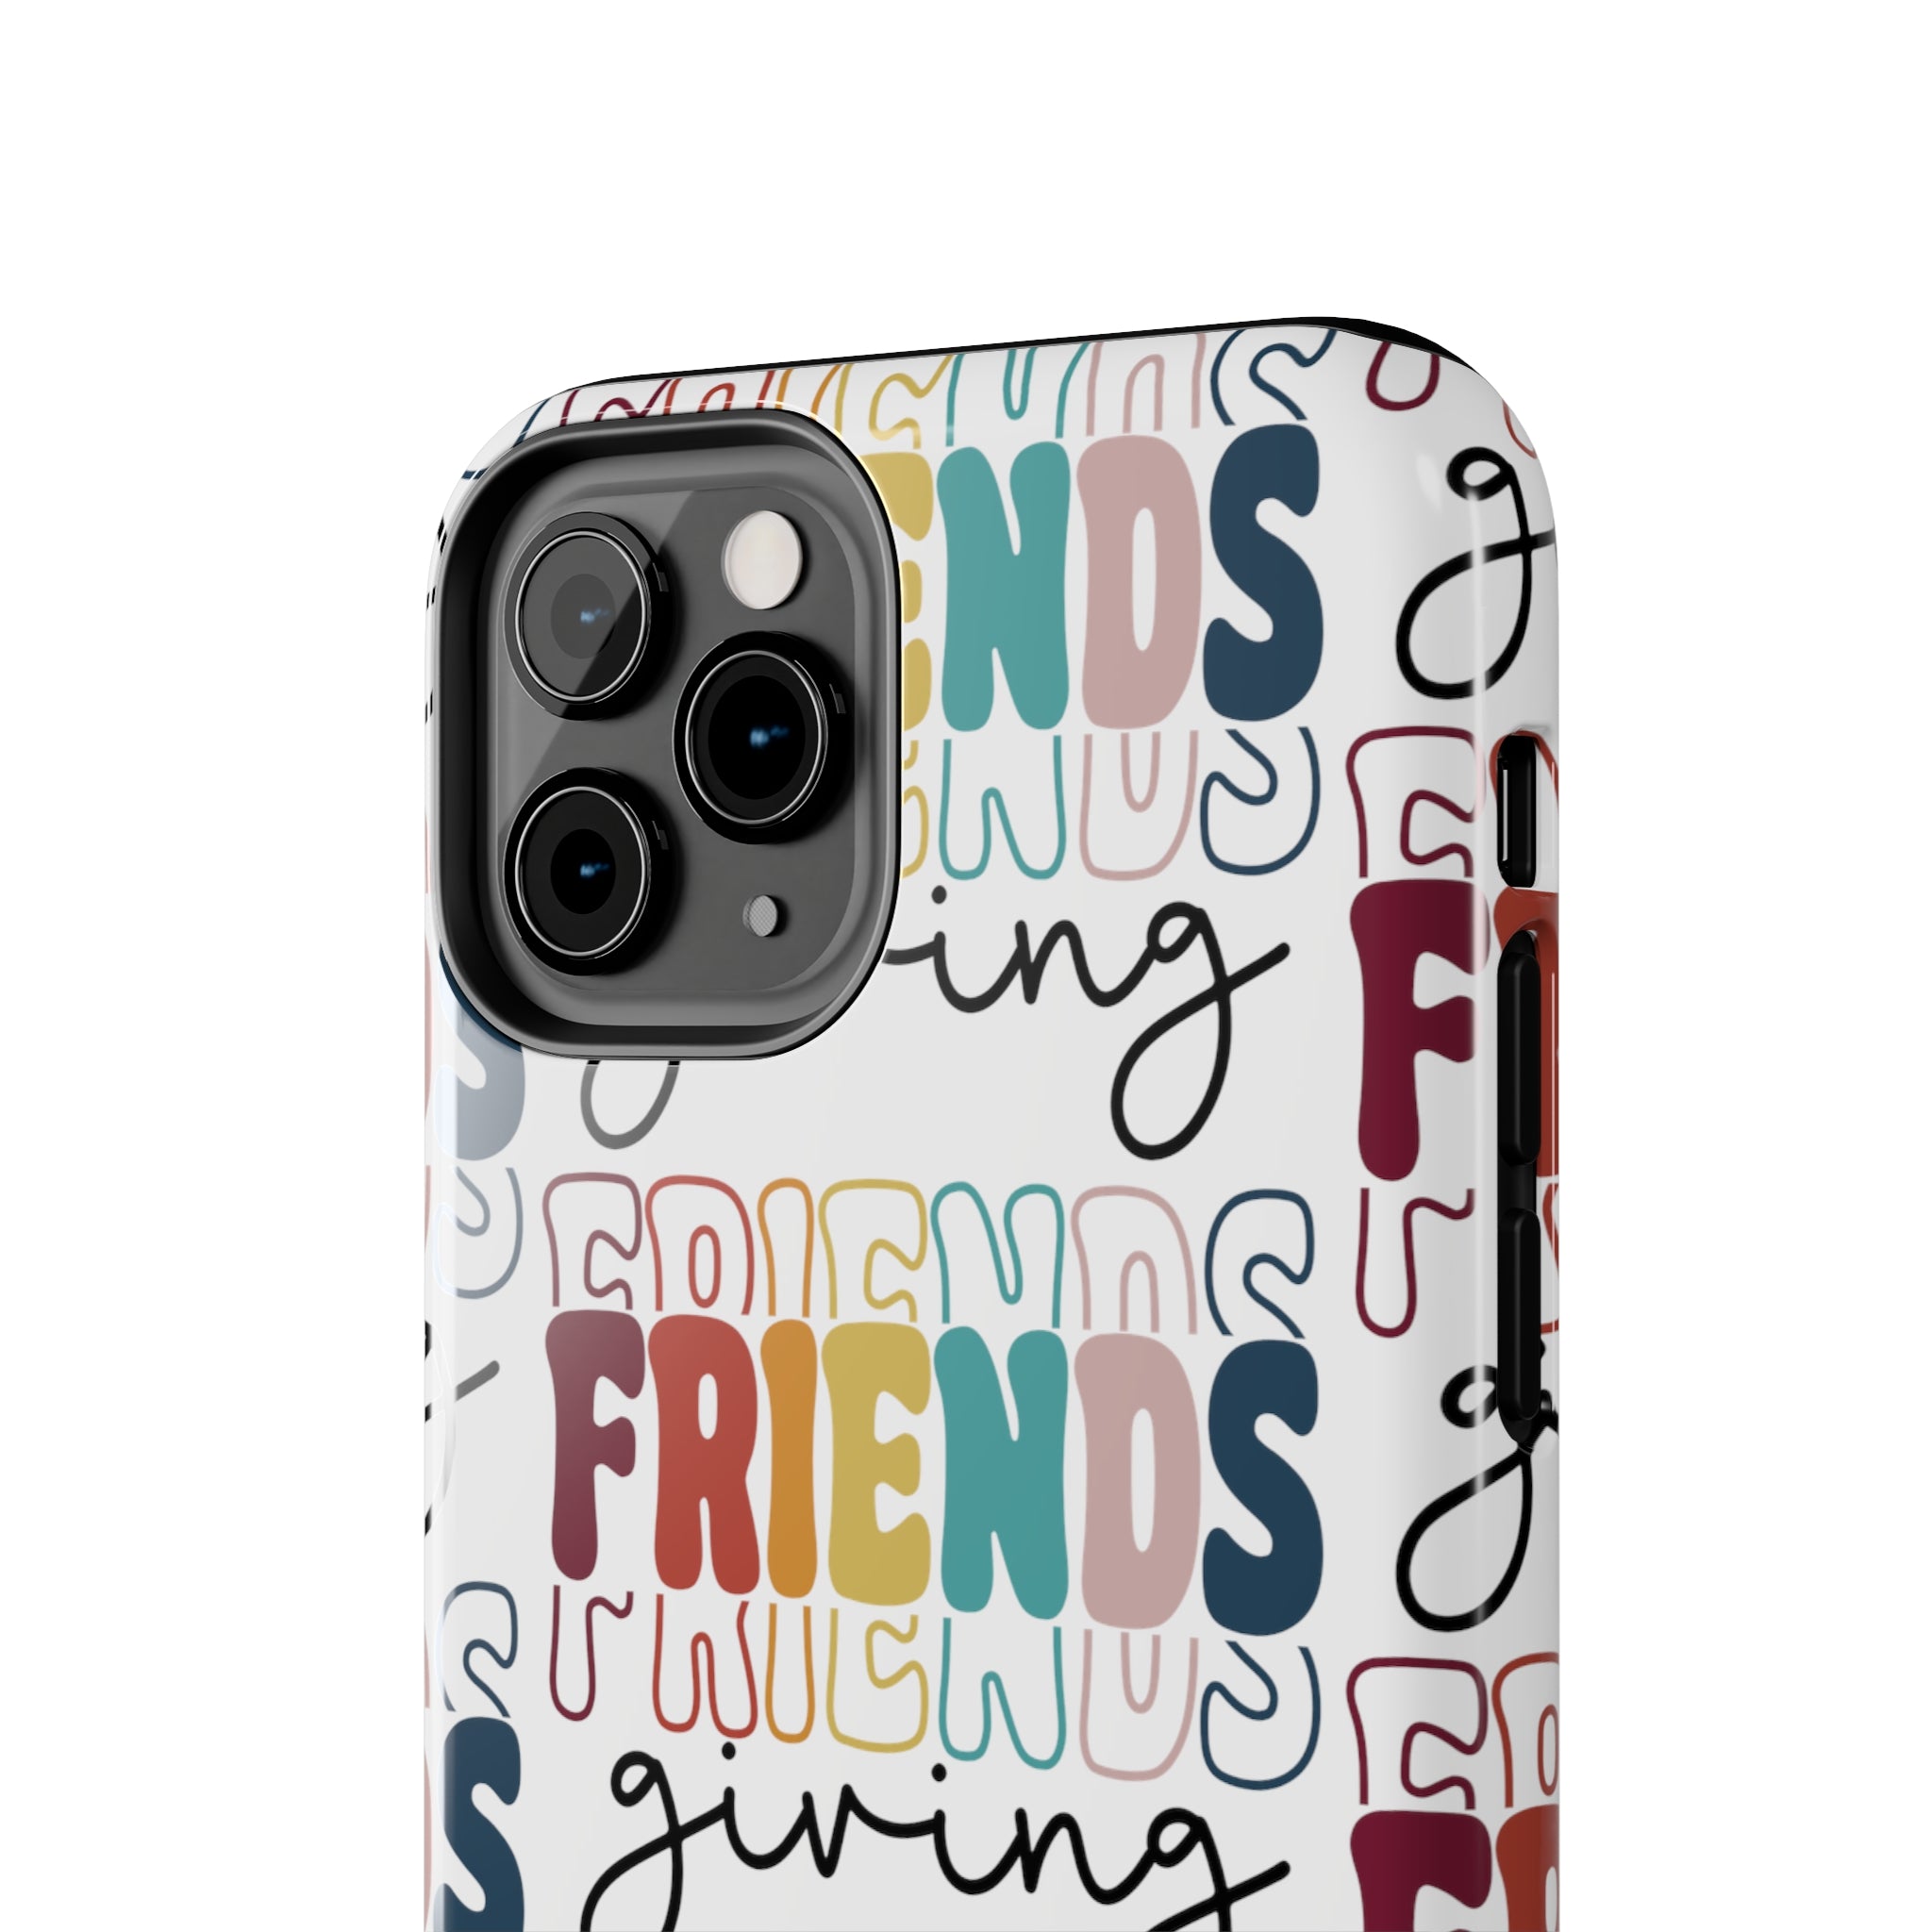 Friendsgiving - Tough iPhone Cases - 21 Sizes